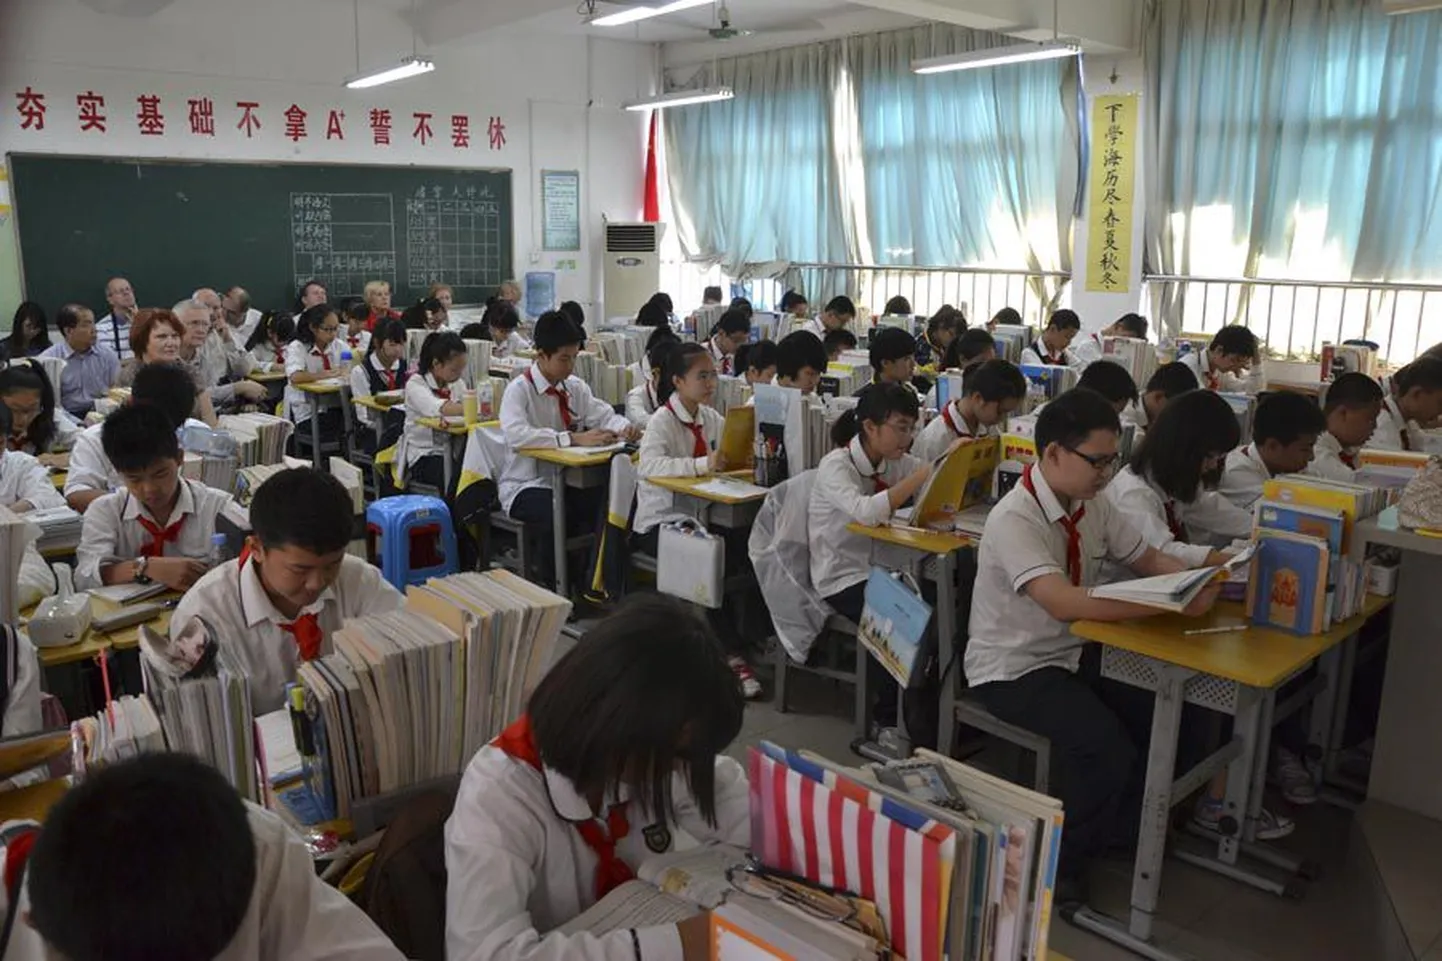 Õpetajakuulekad Hiina õpilased saavutasid PISA edetabelis esikoha nii loodusteadustes, matemaatikas kui ka lugemisoskuses.